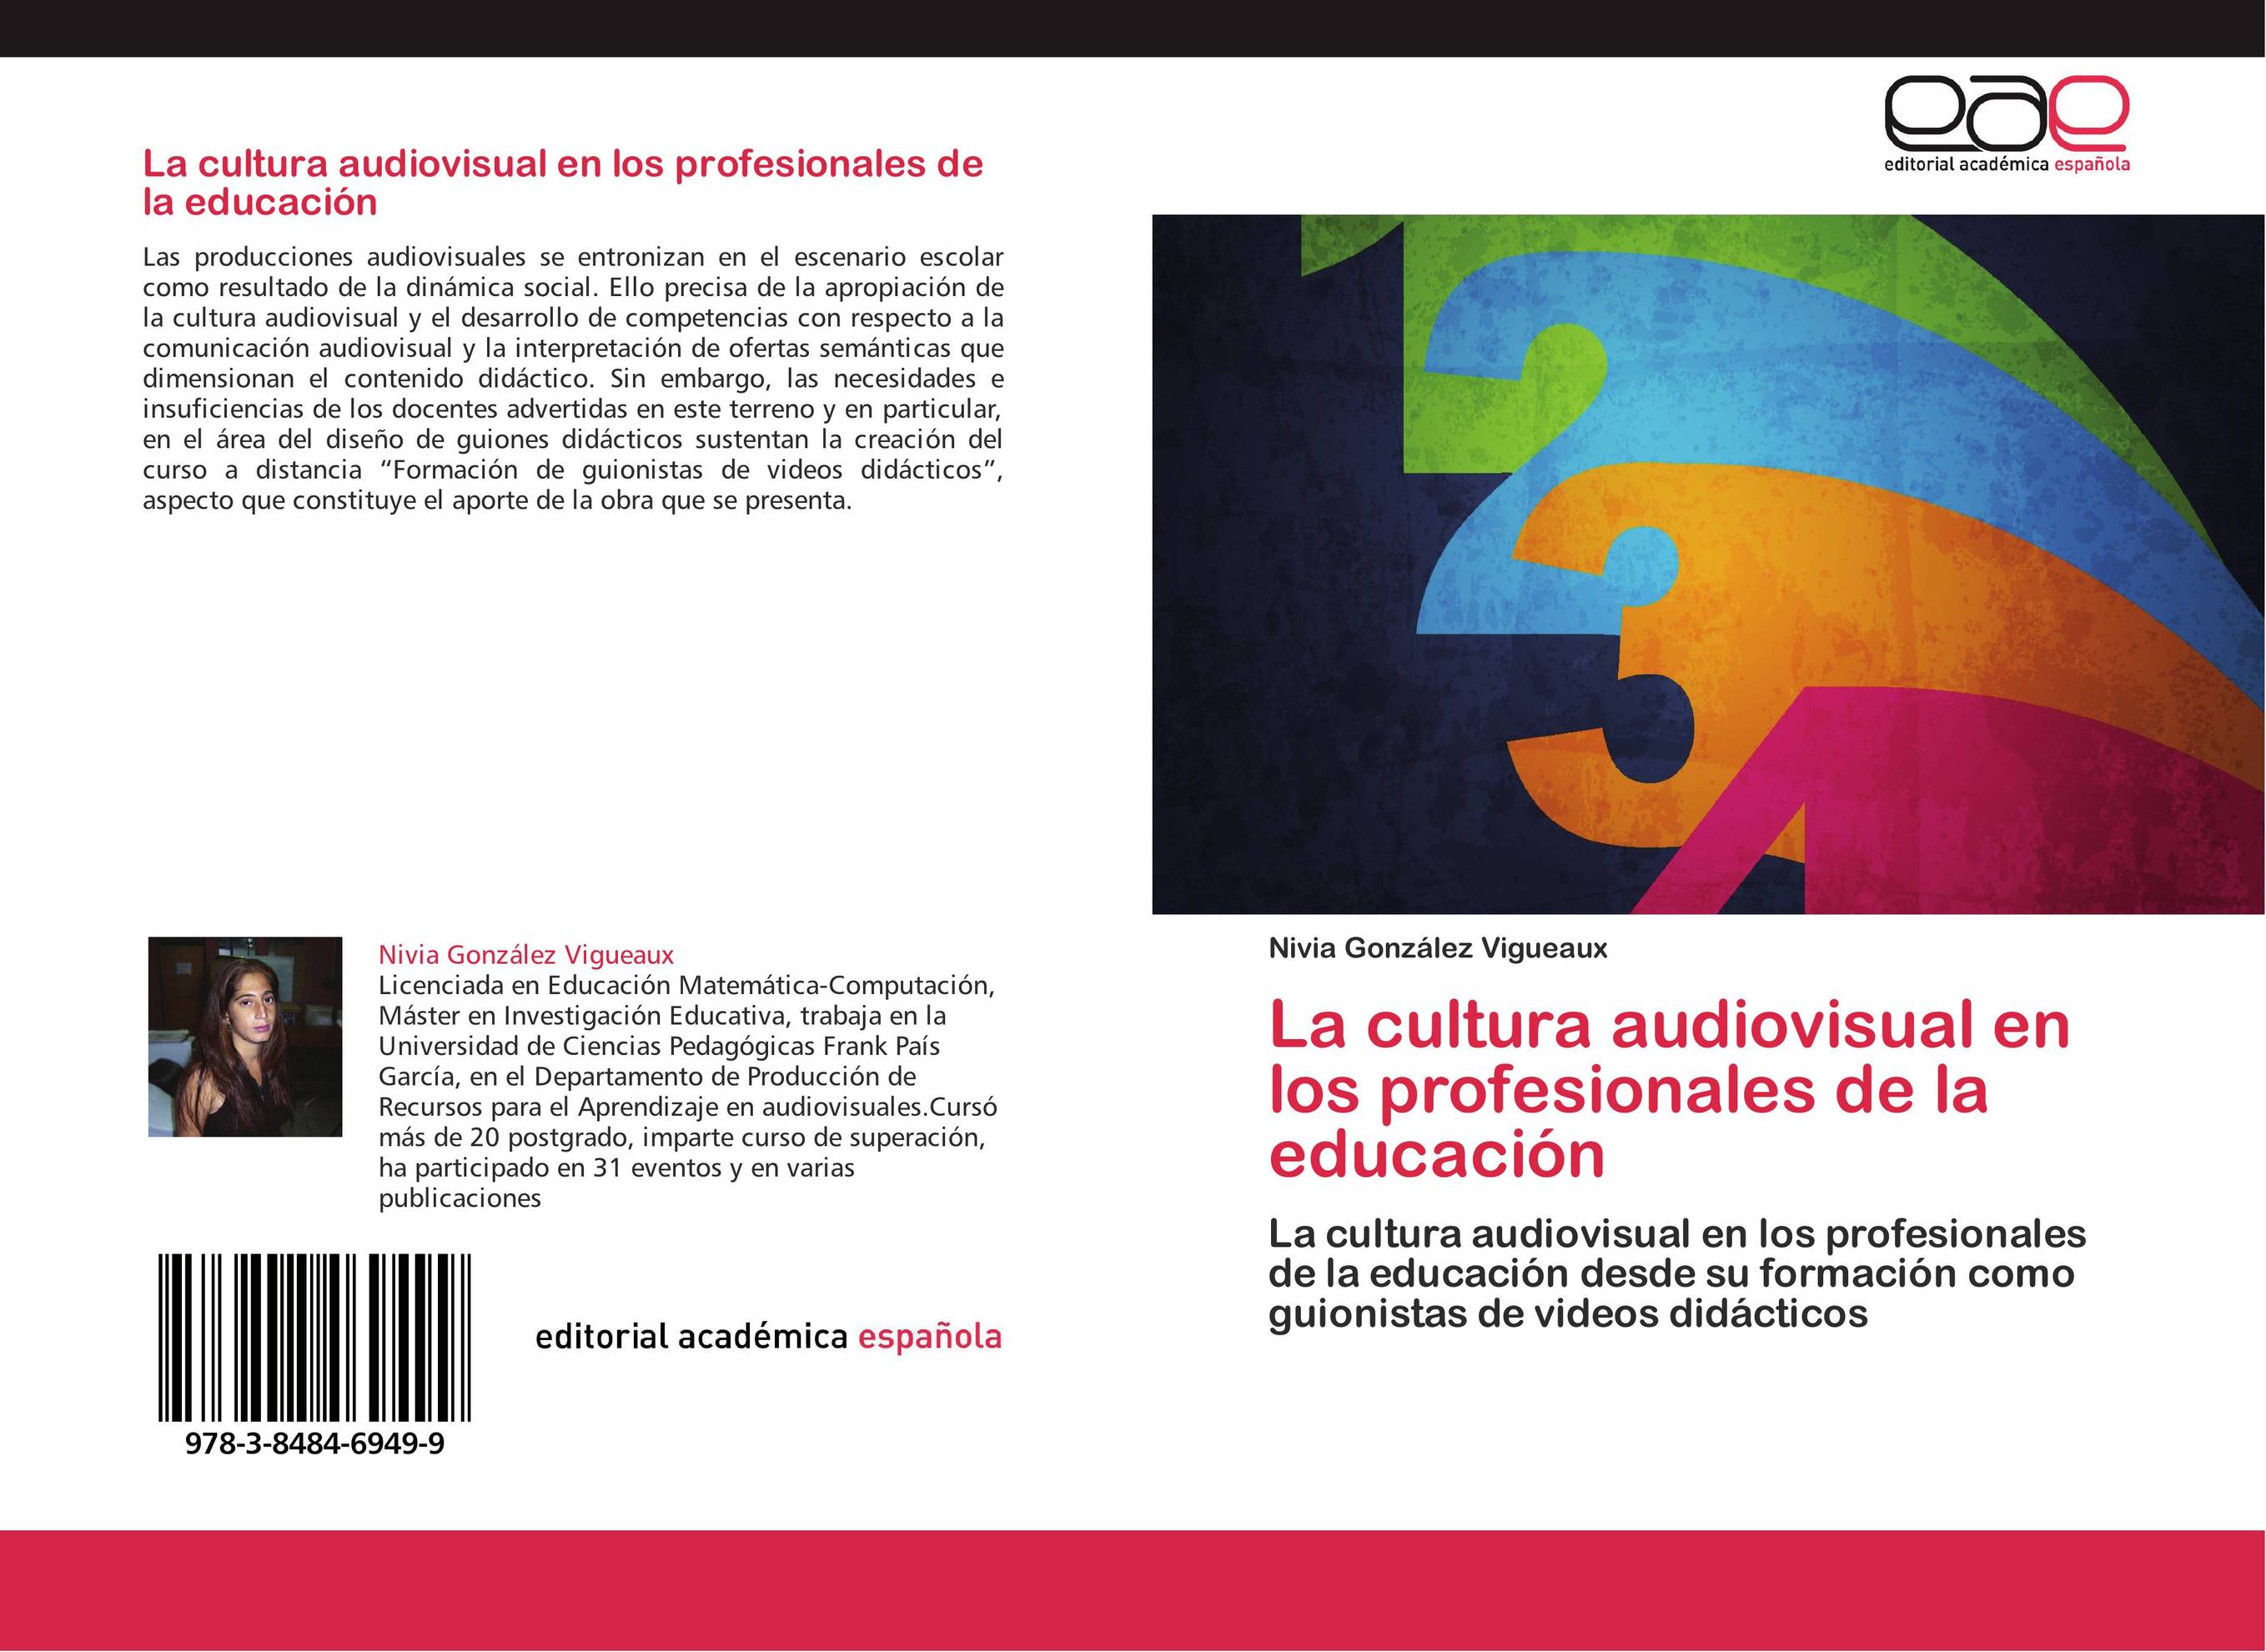 La cultura audiovisual en los profesionales de la educación